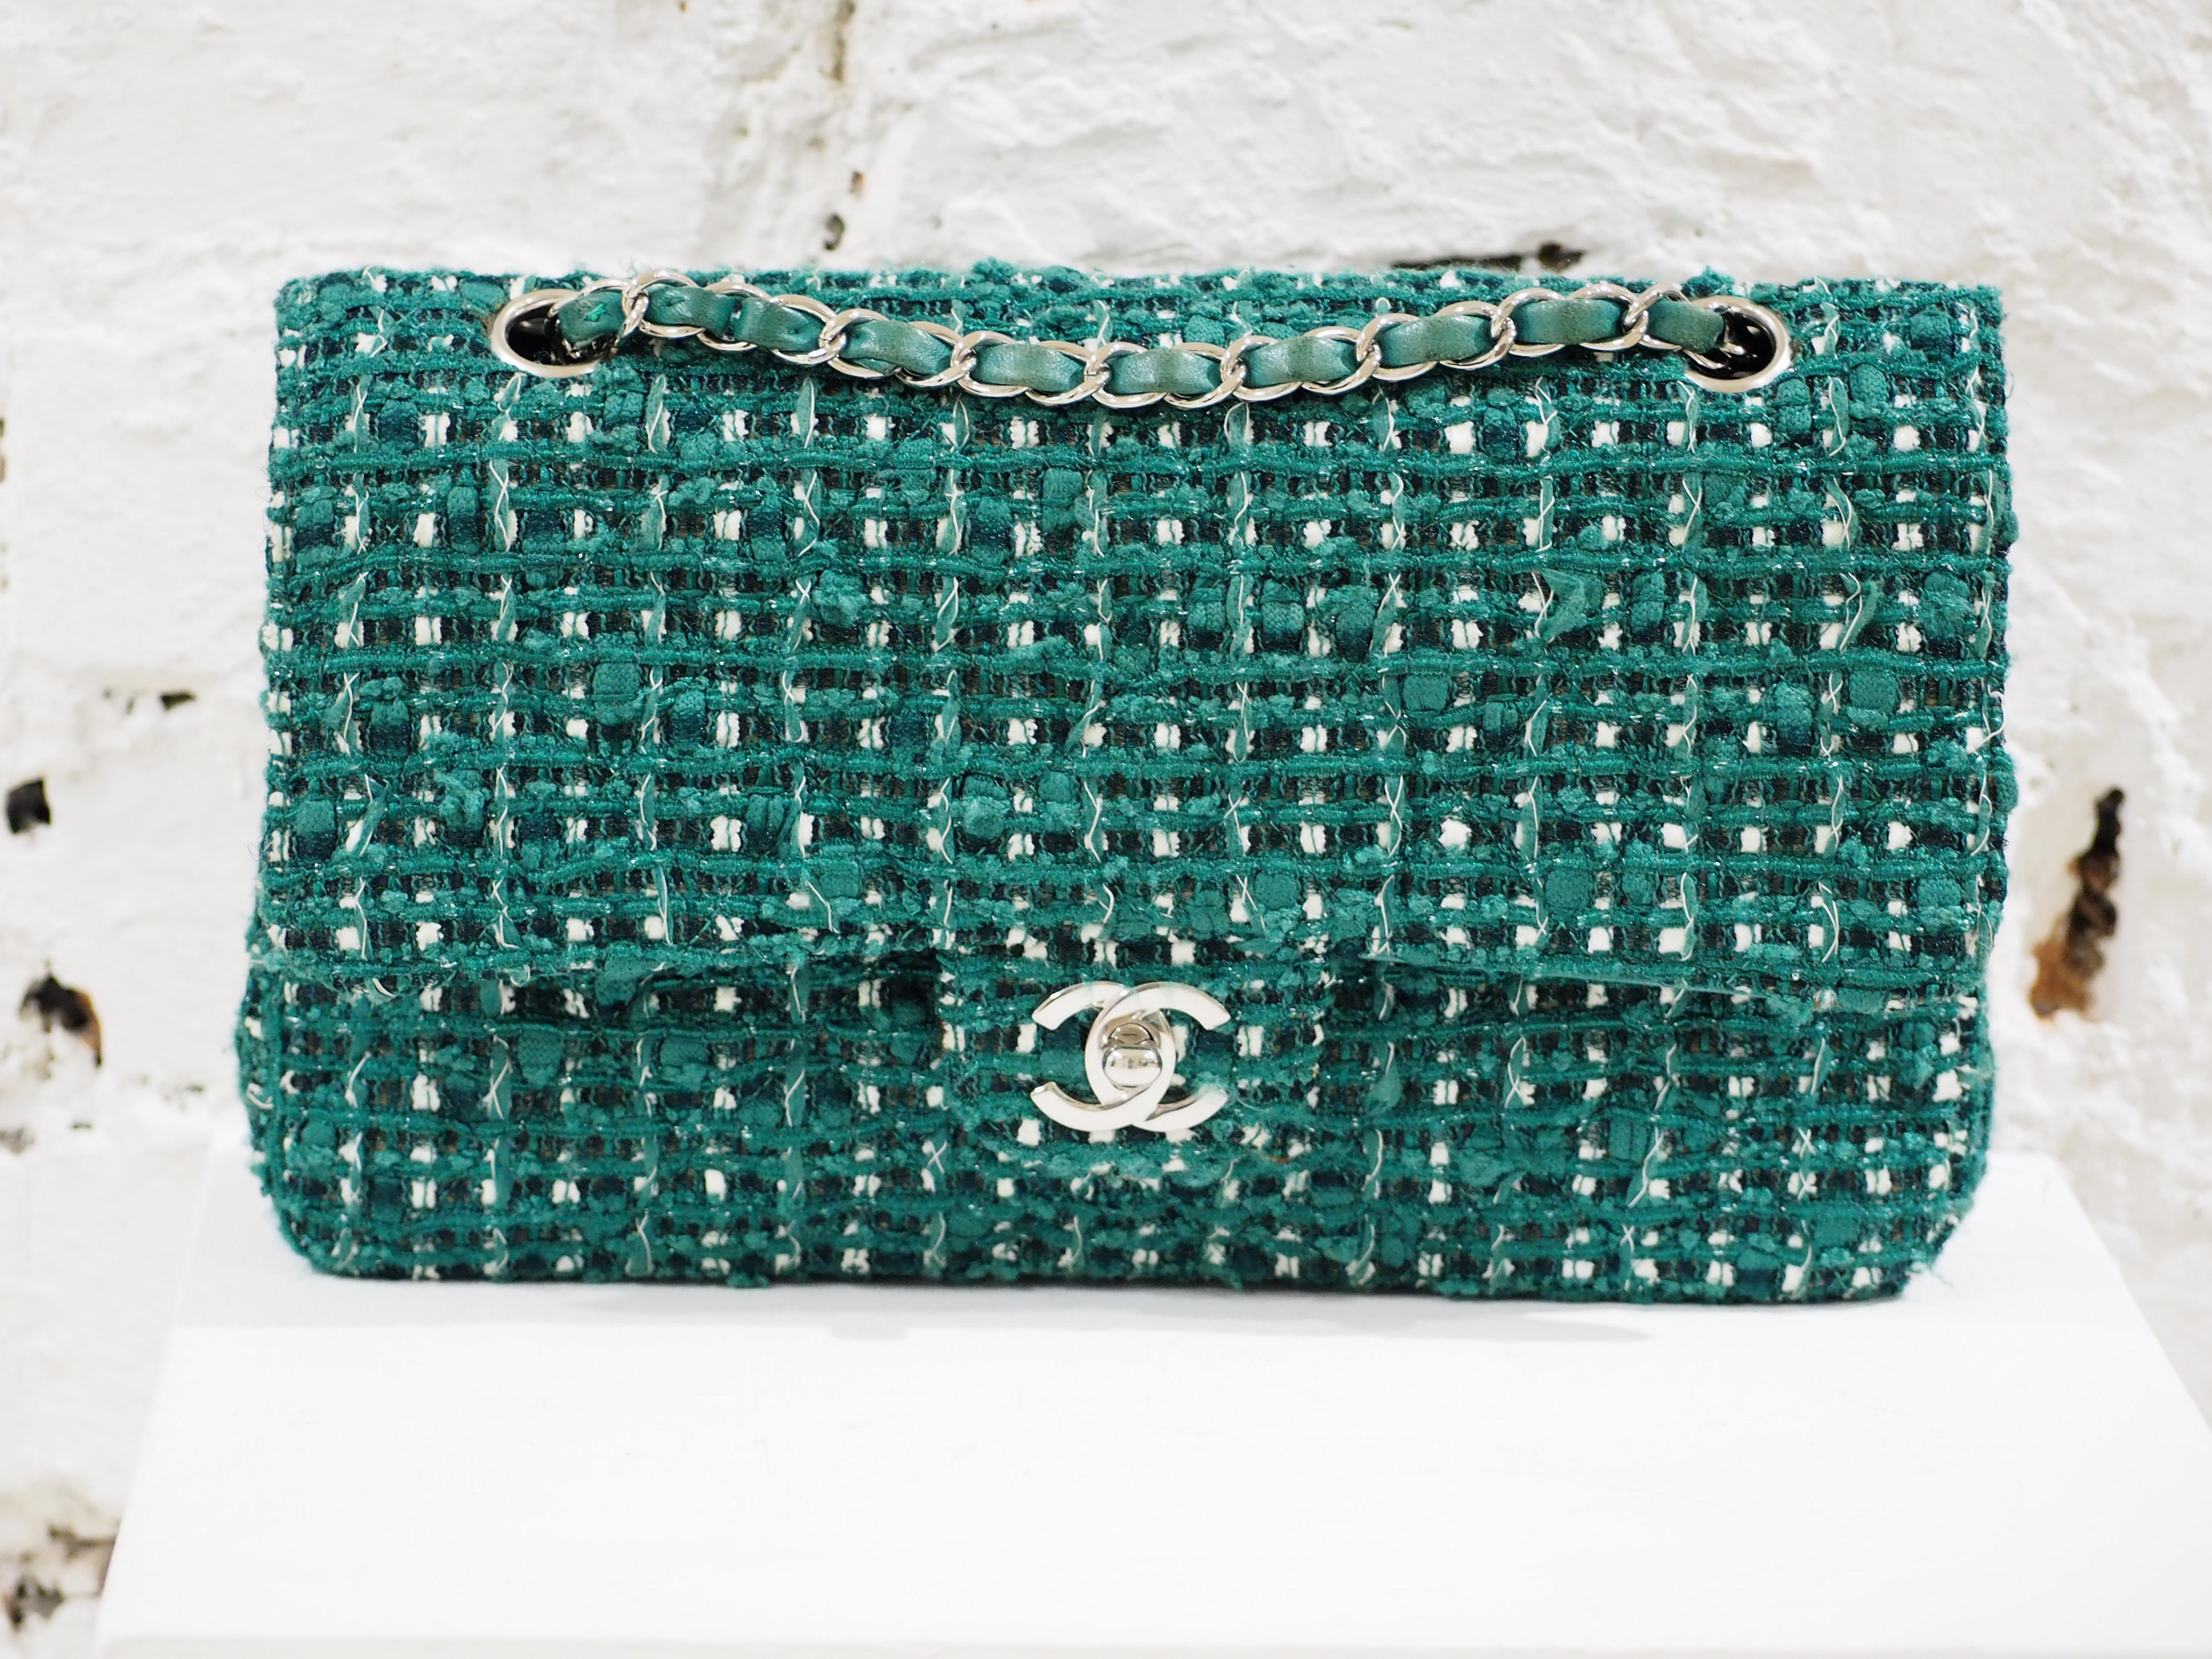 Chanel 2.55 green tweed shoulder bag 4